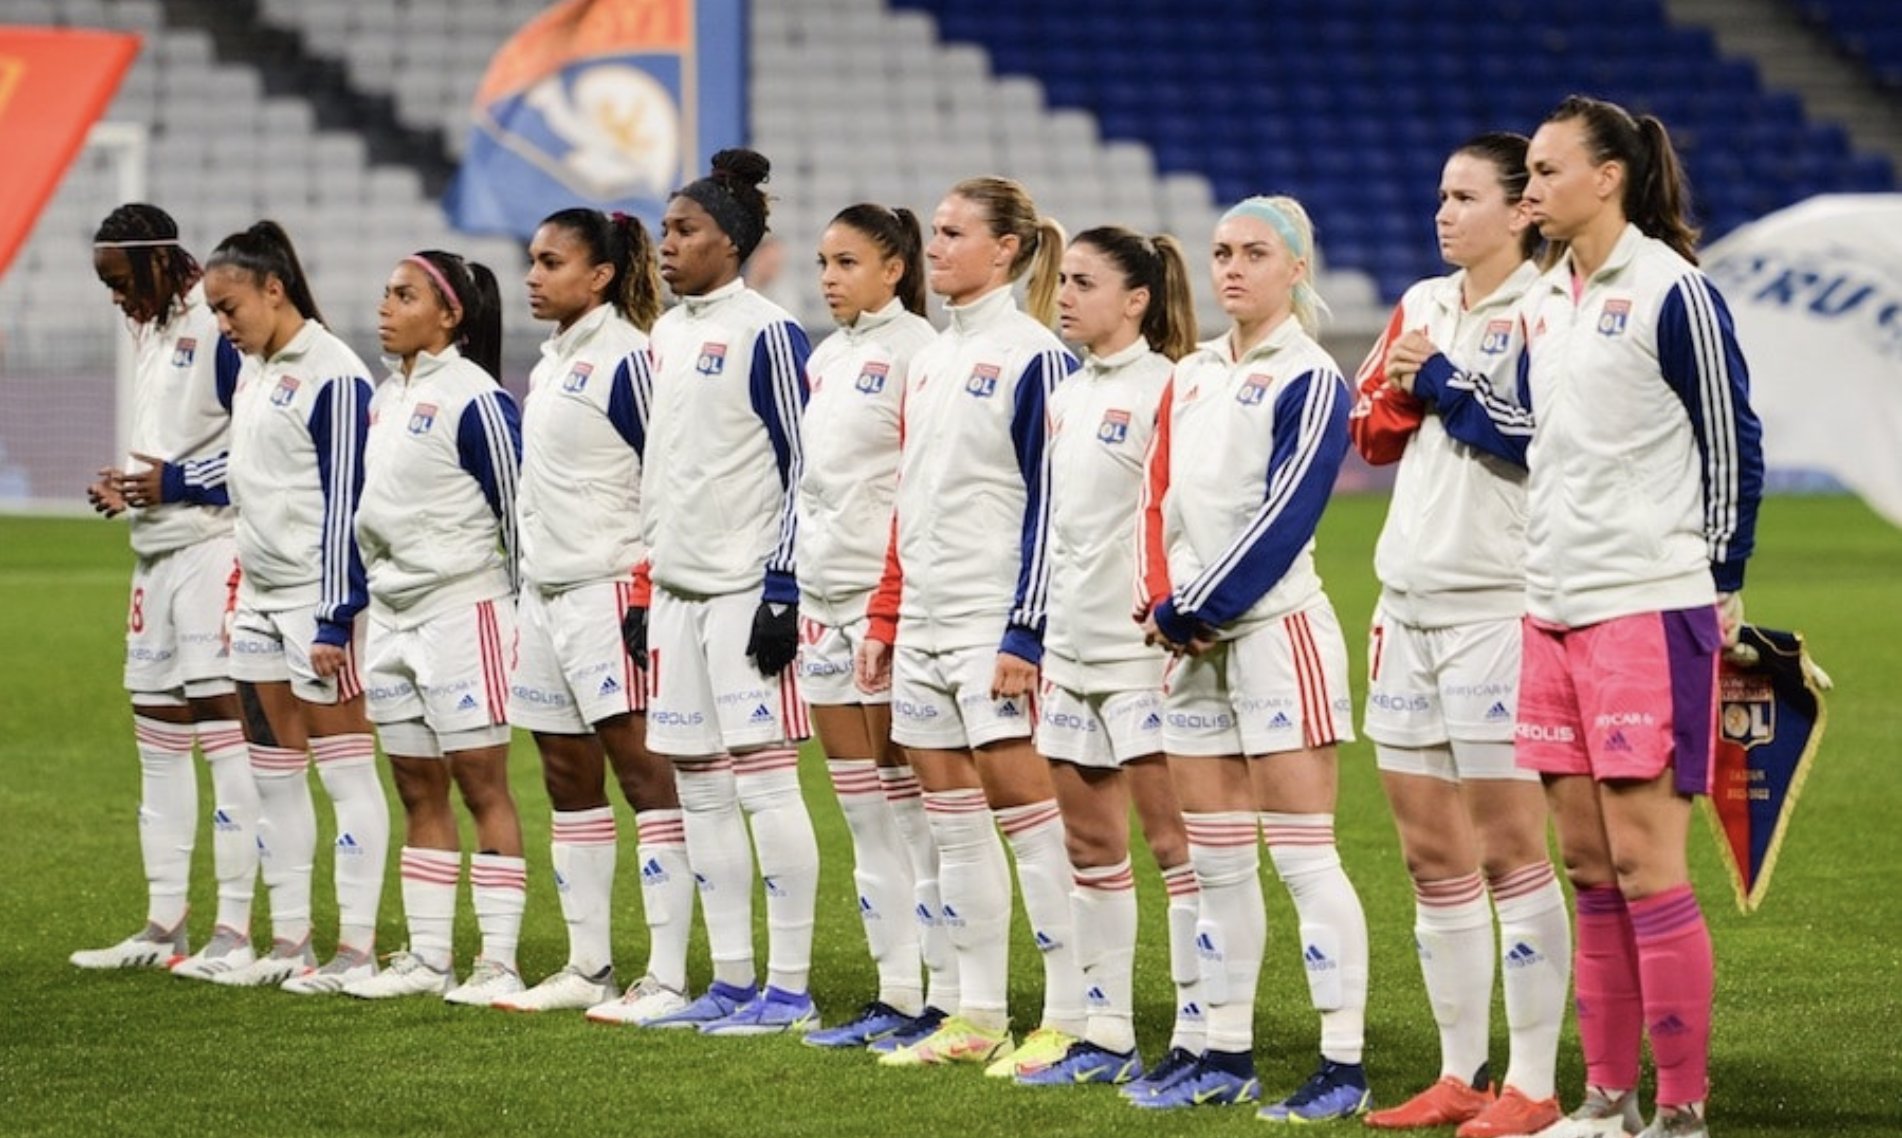 La difficile professionnalisation du foot féminin », mon analyse dans « Le Quotidien du sport »